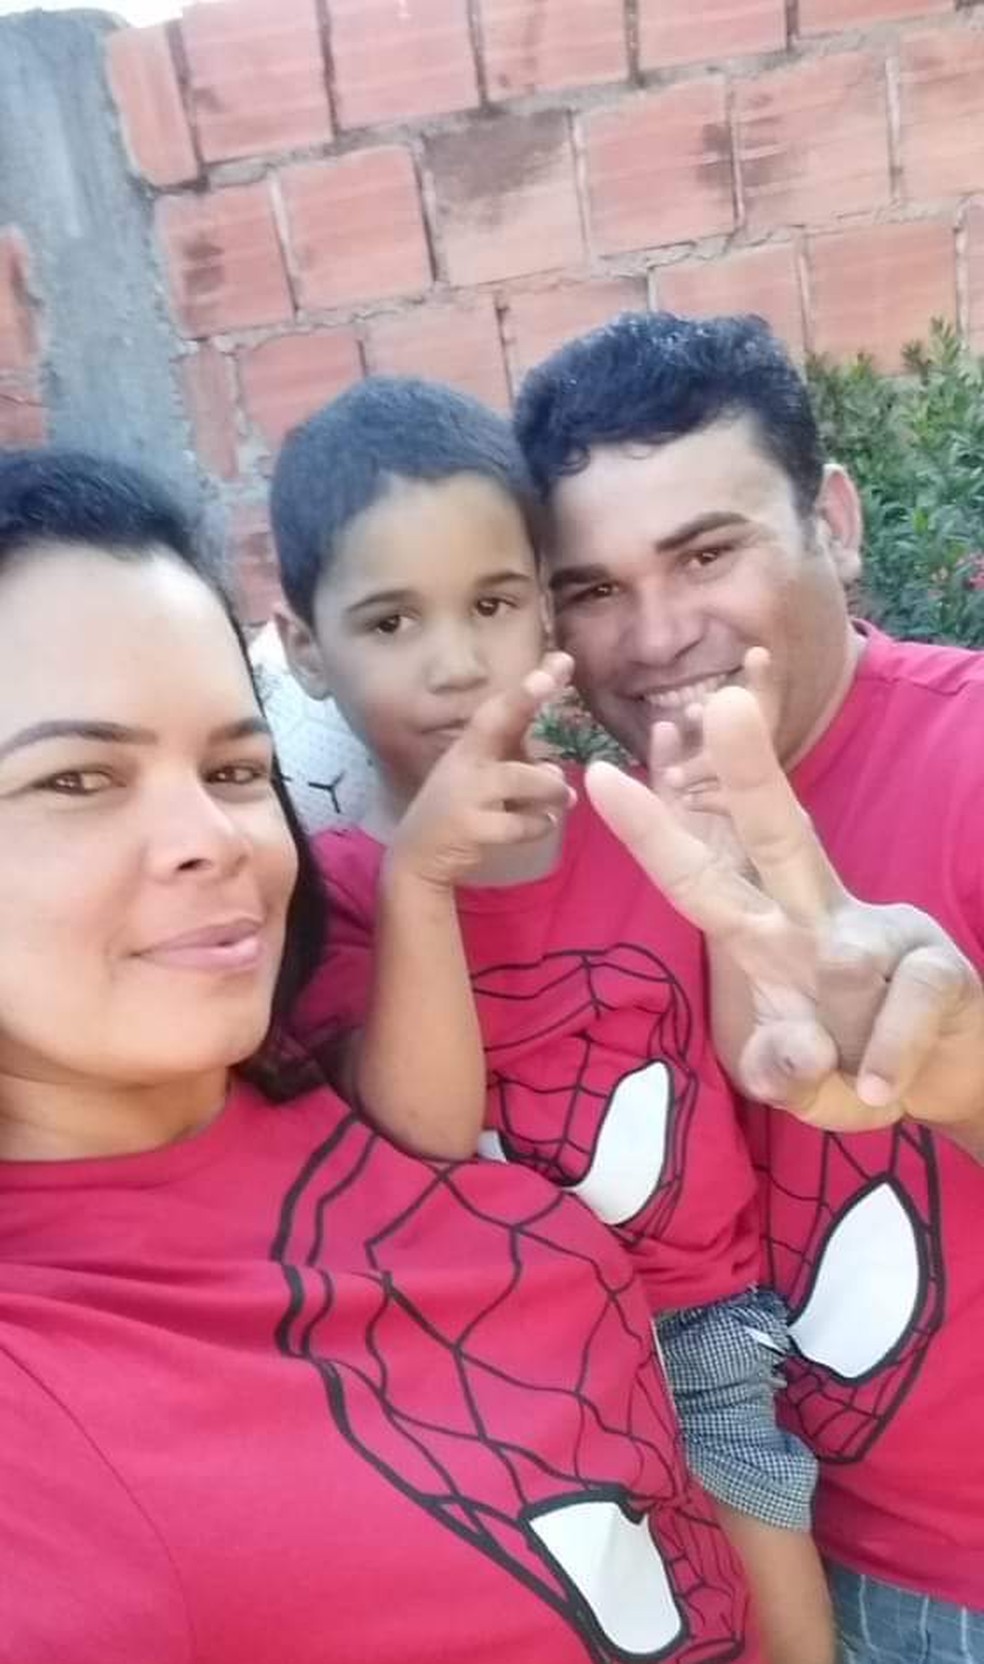 Daniel Augusto Costa morreu no acidente; foto foi tirada ontem com o pai e a madrasta, feridos no acidente â Foto: Arquivo pessoal